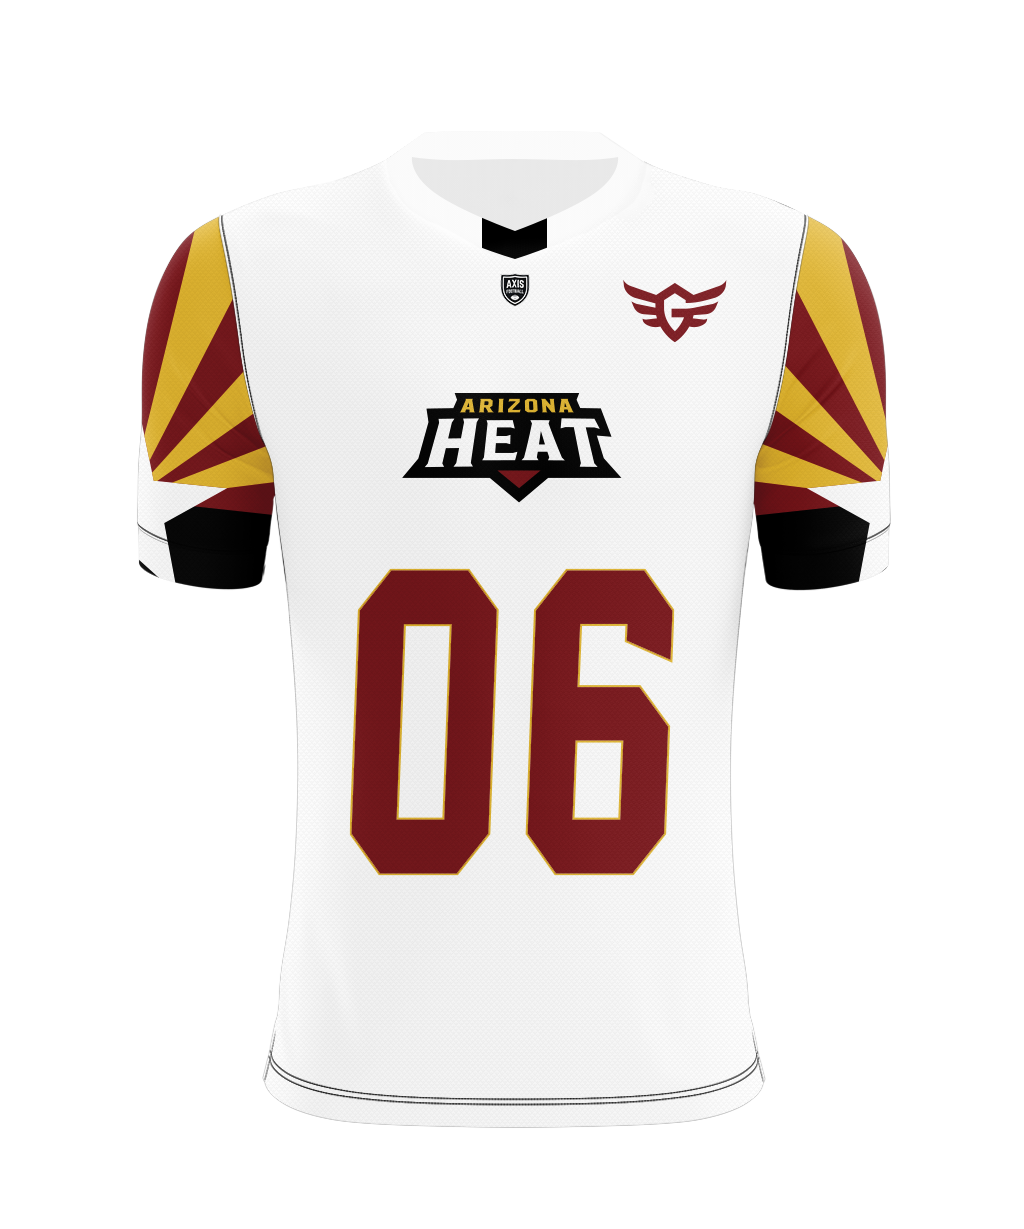 heat game worn jersey